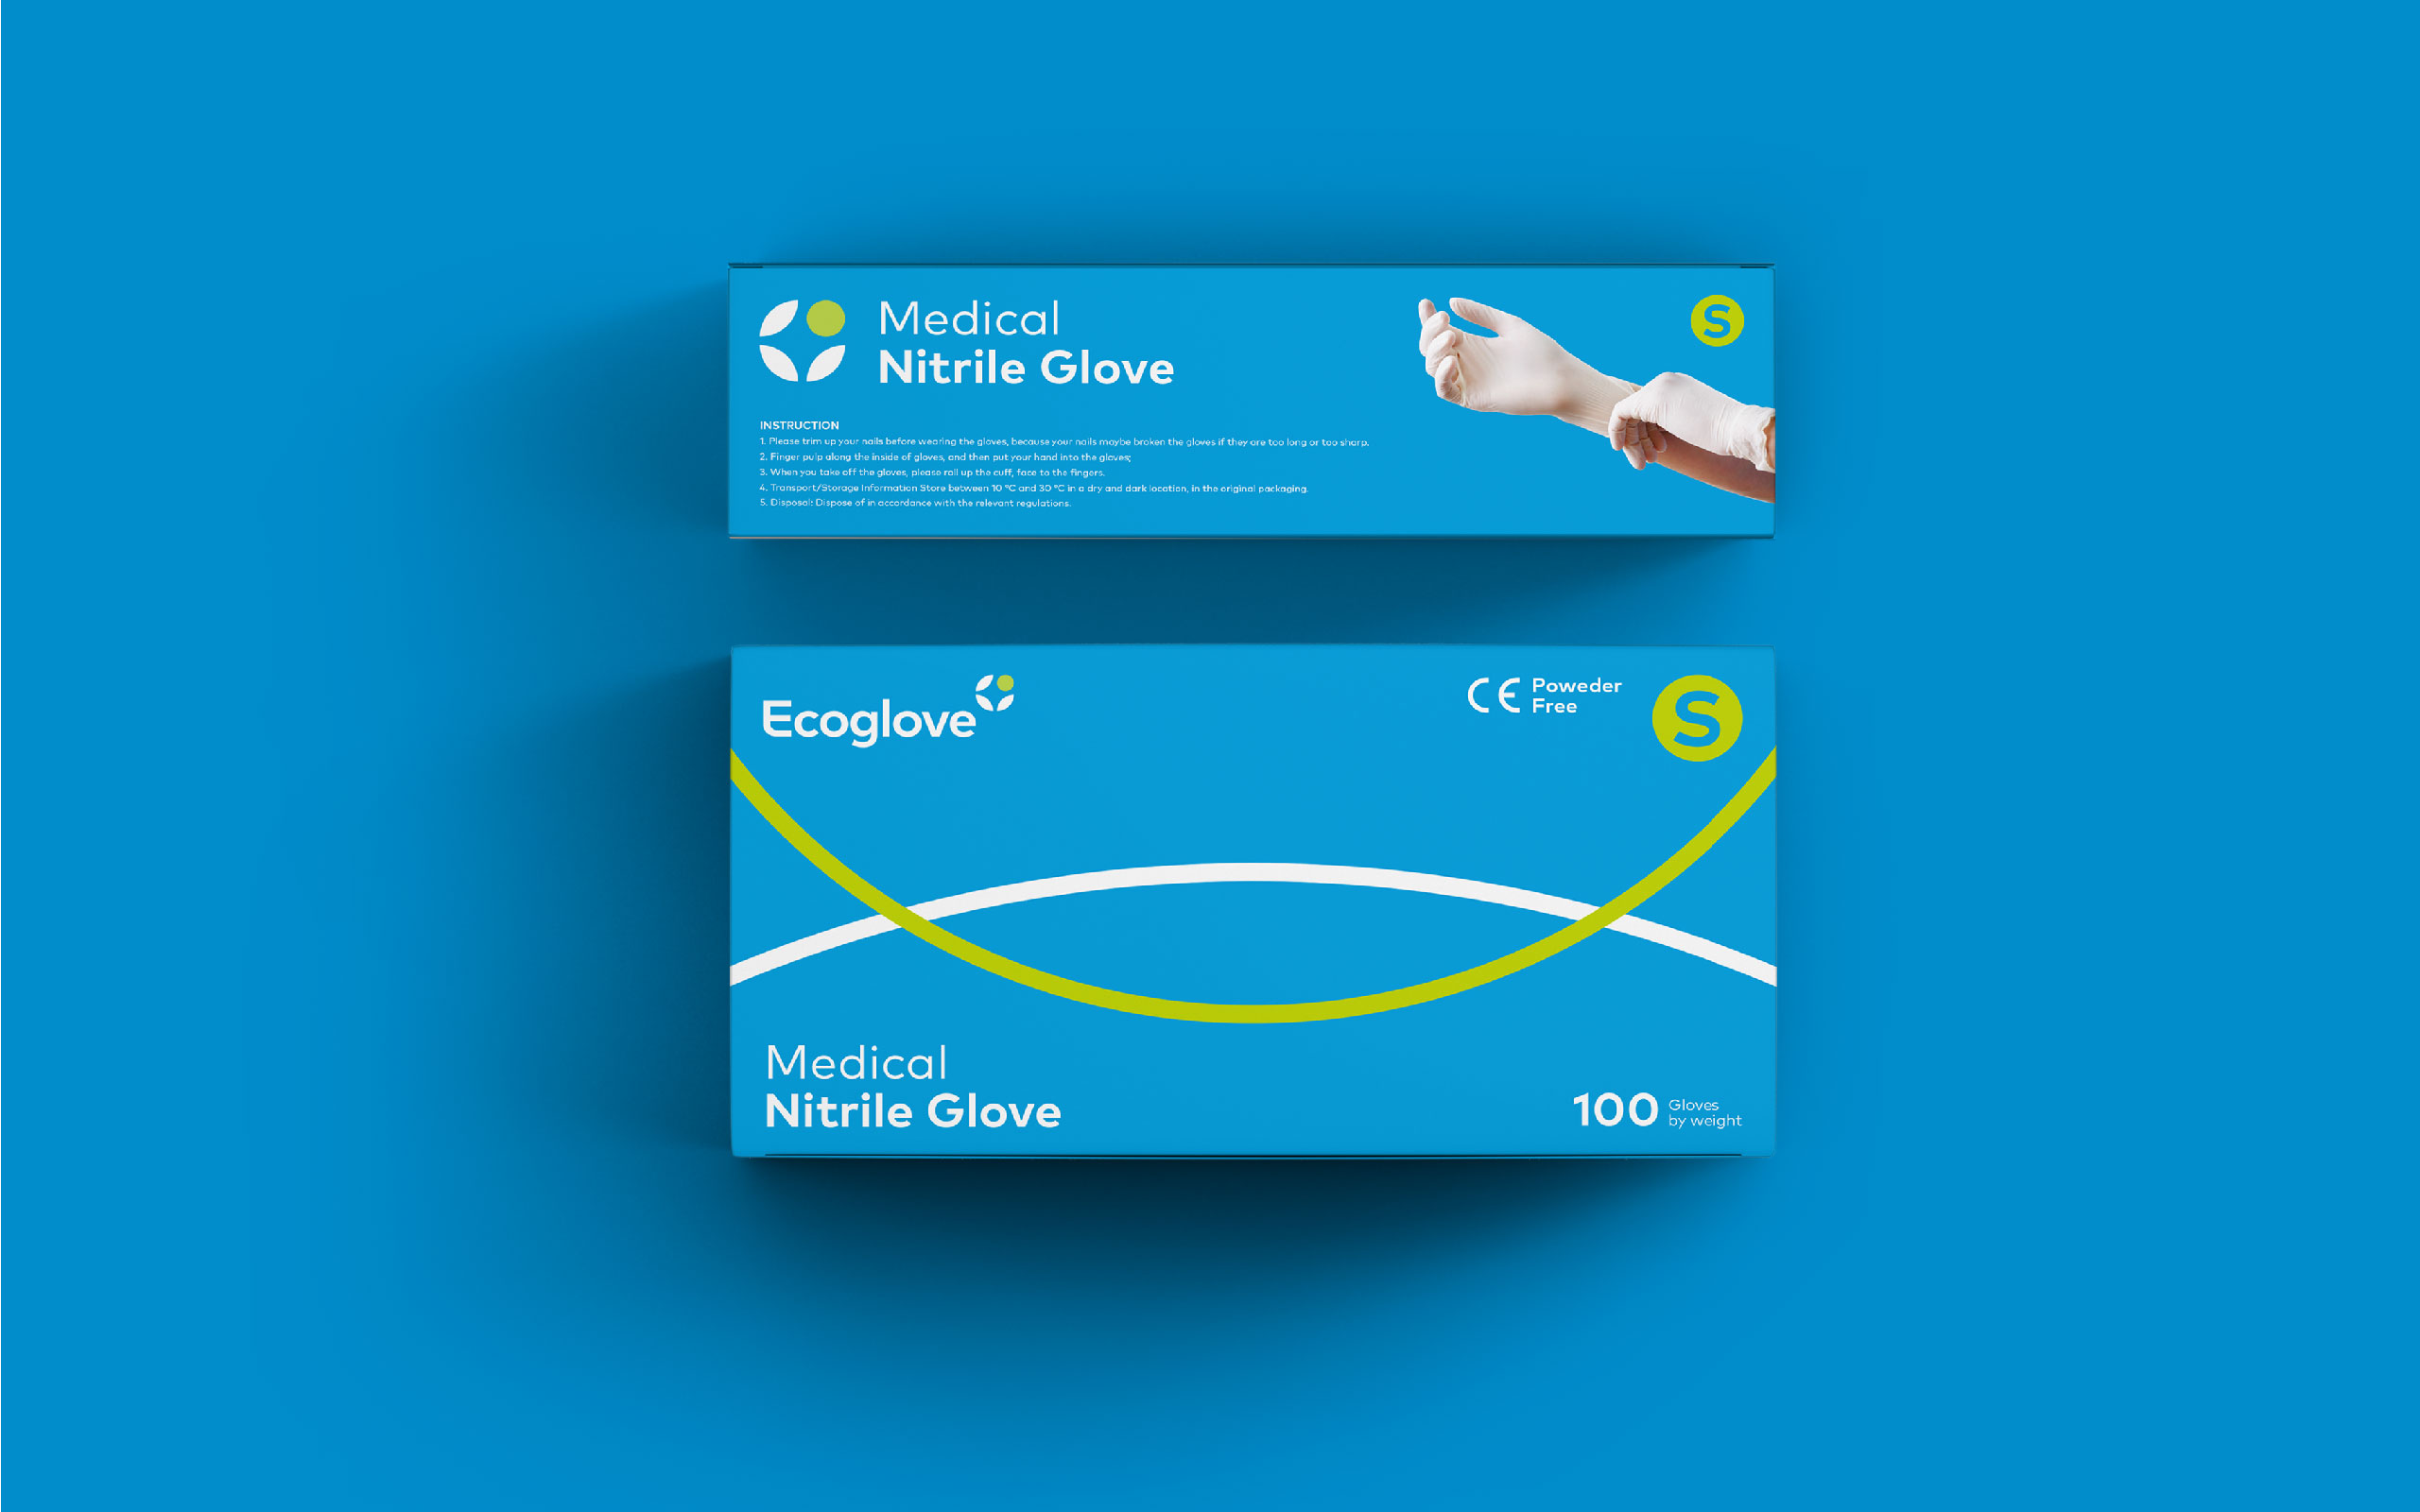 Ecoglowe 绿色医用手套品牌创建策划设计-包装设计